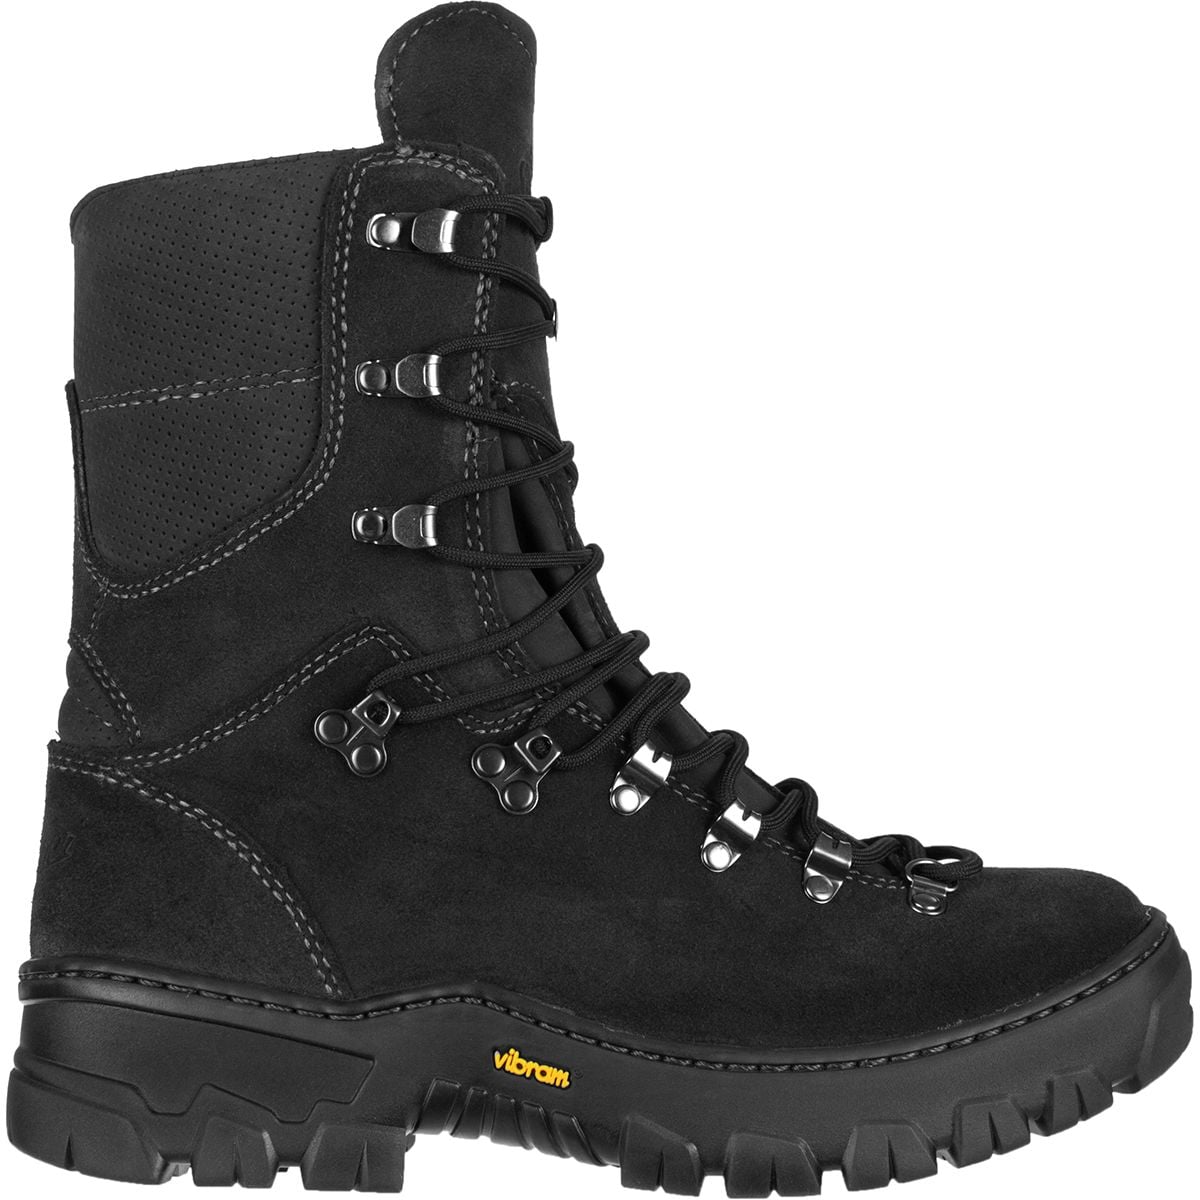 Danner Wildland Tactical Firefighter Boot - Men's - Footwear